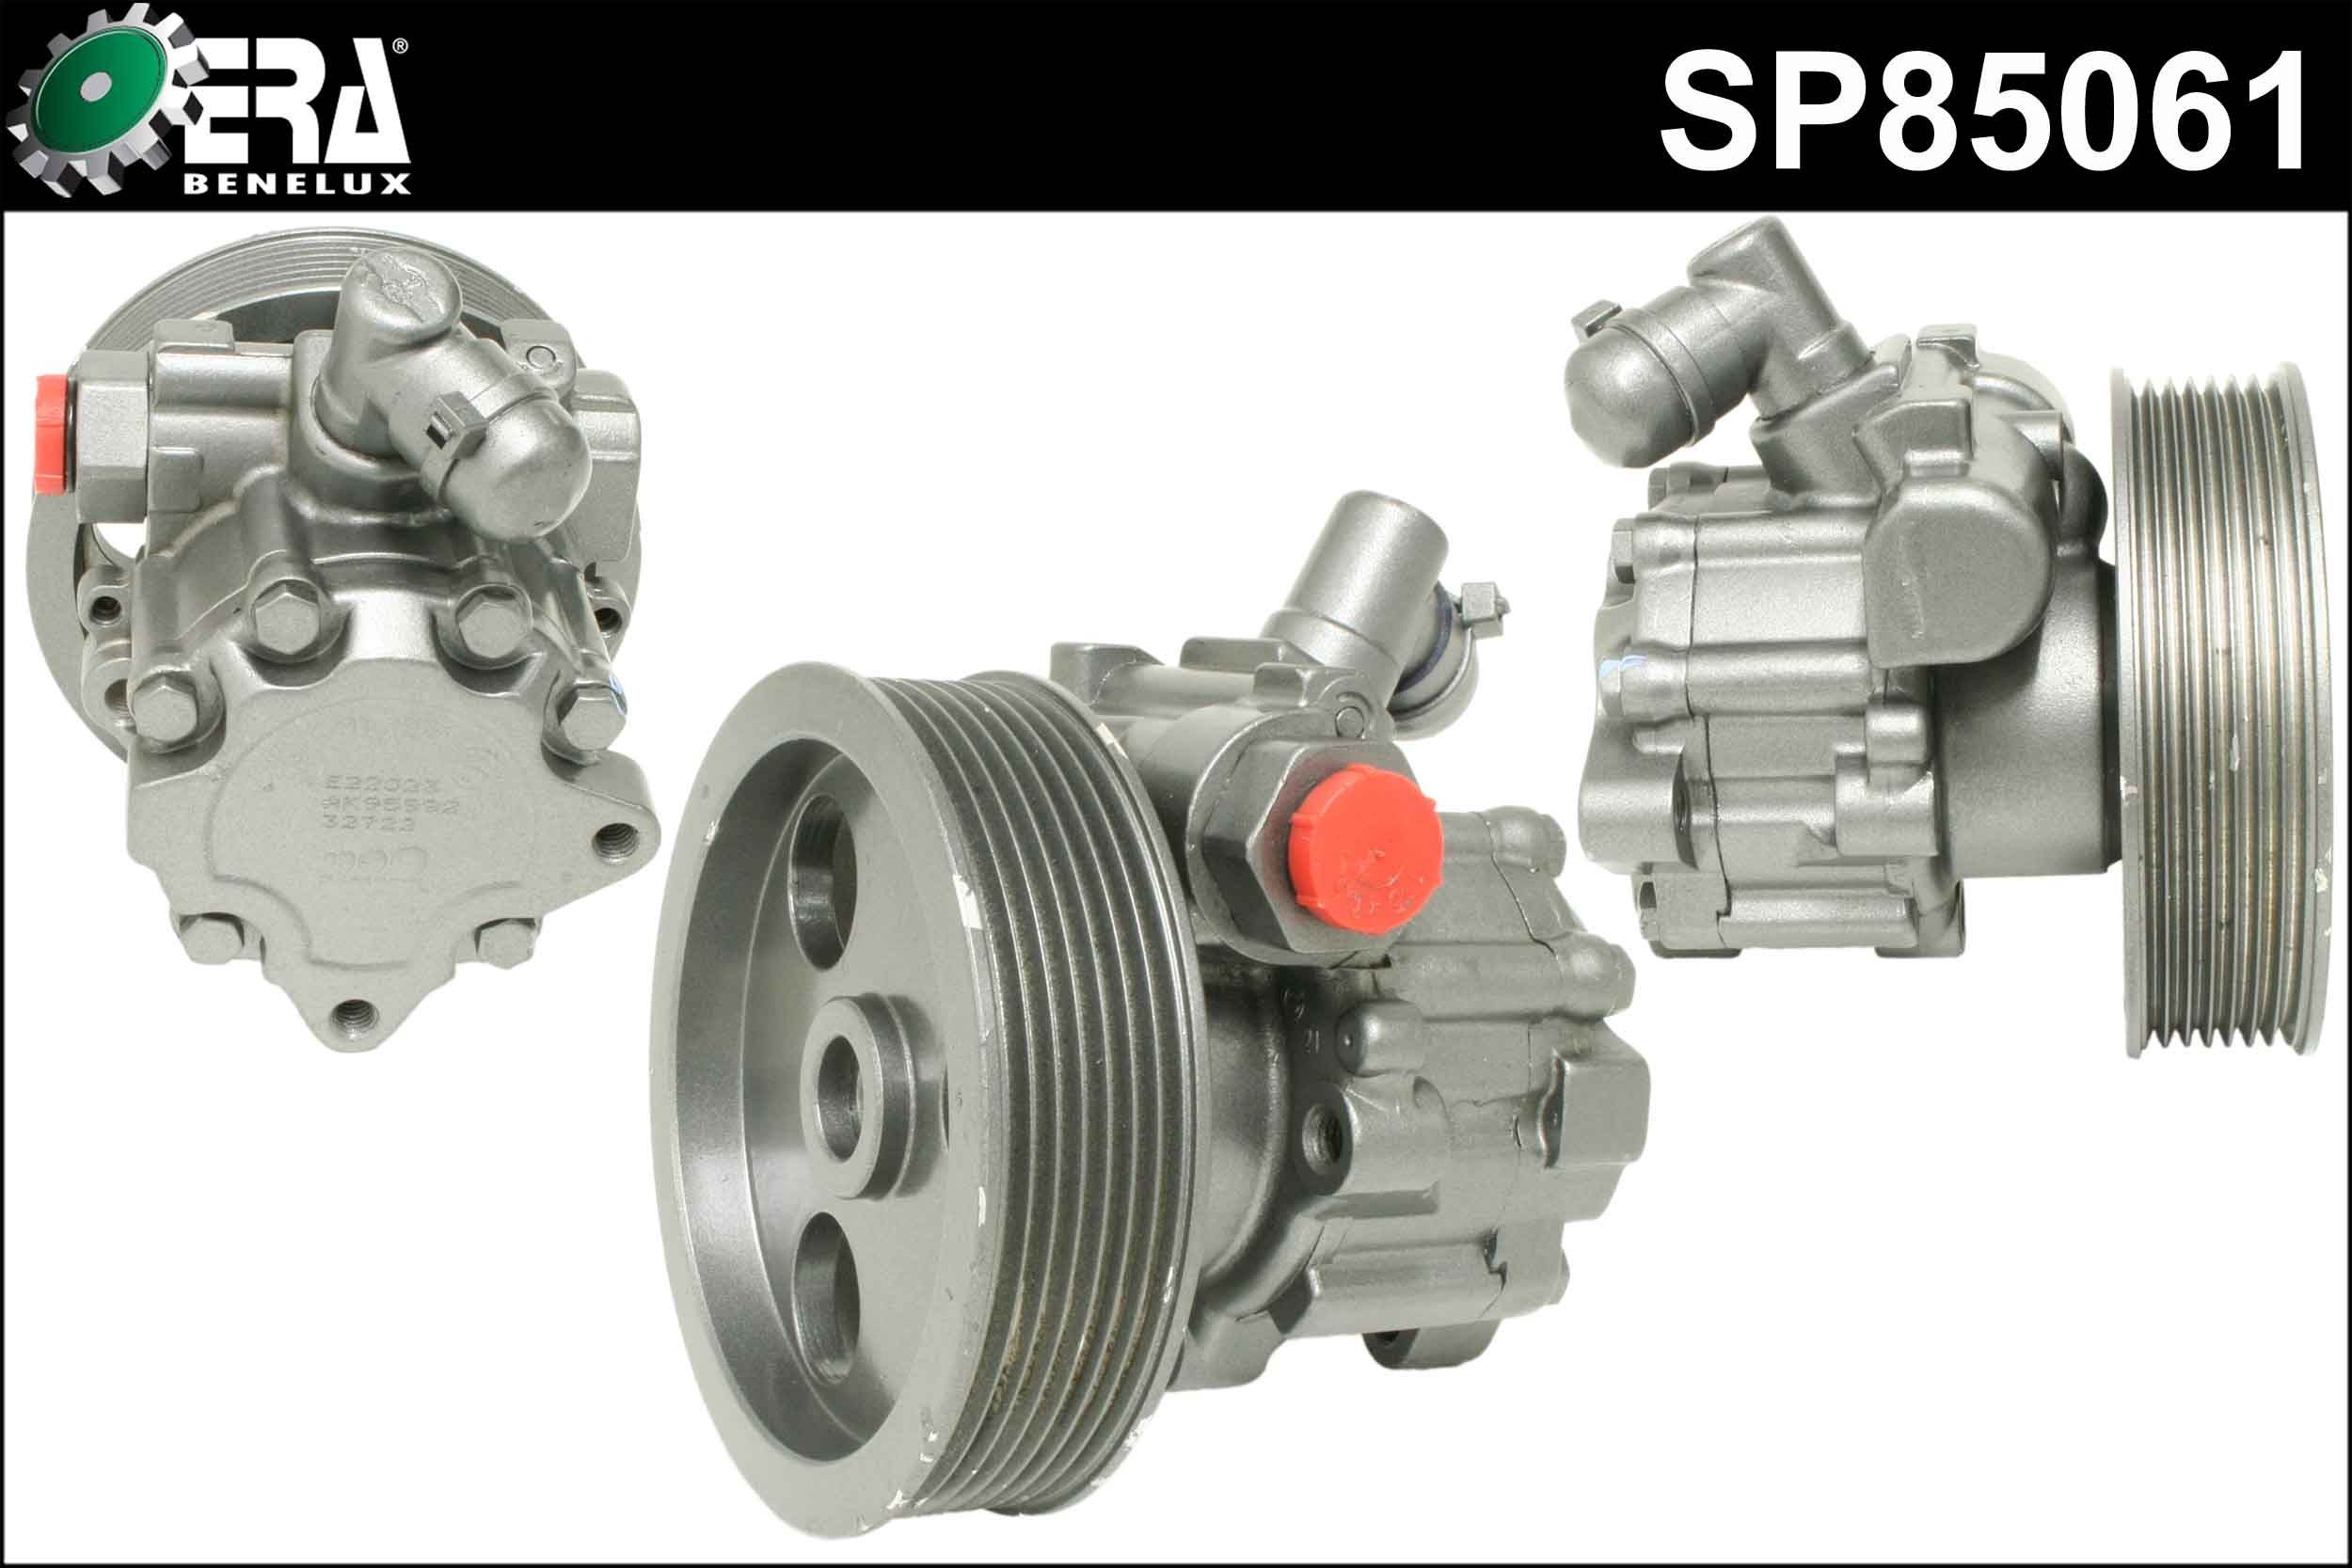 Great value for money - ERA Benelux Power steering pump SP85061